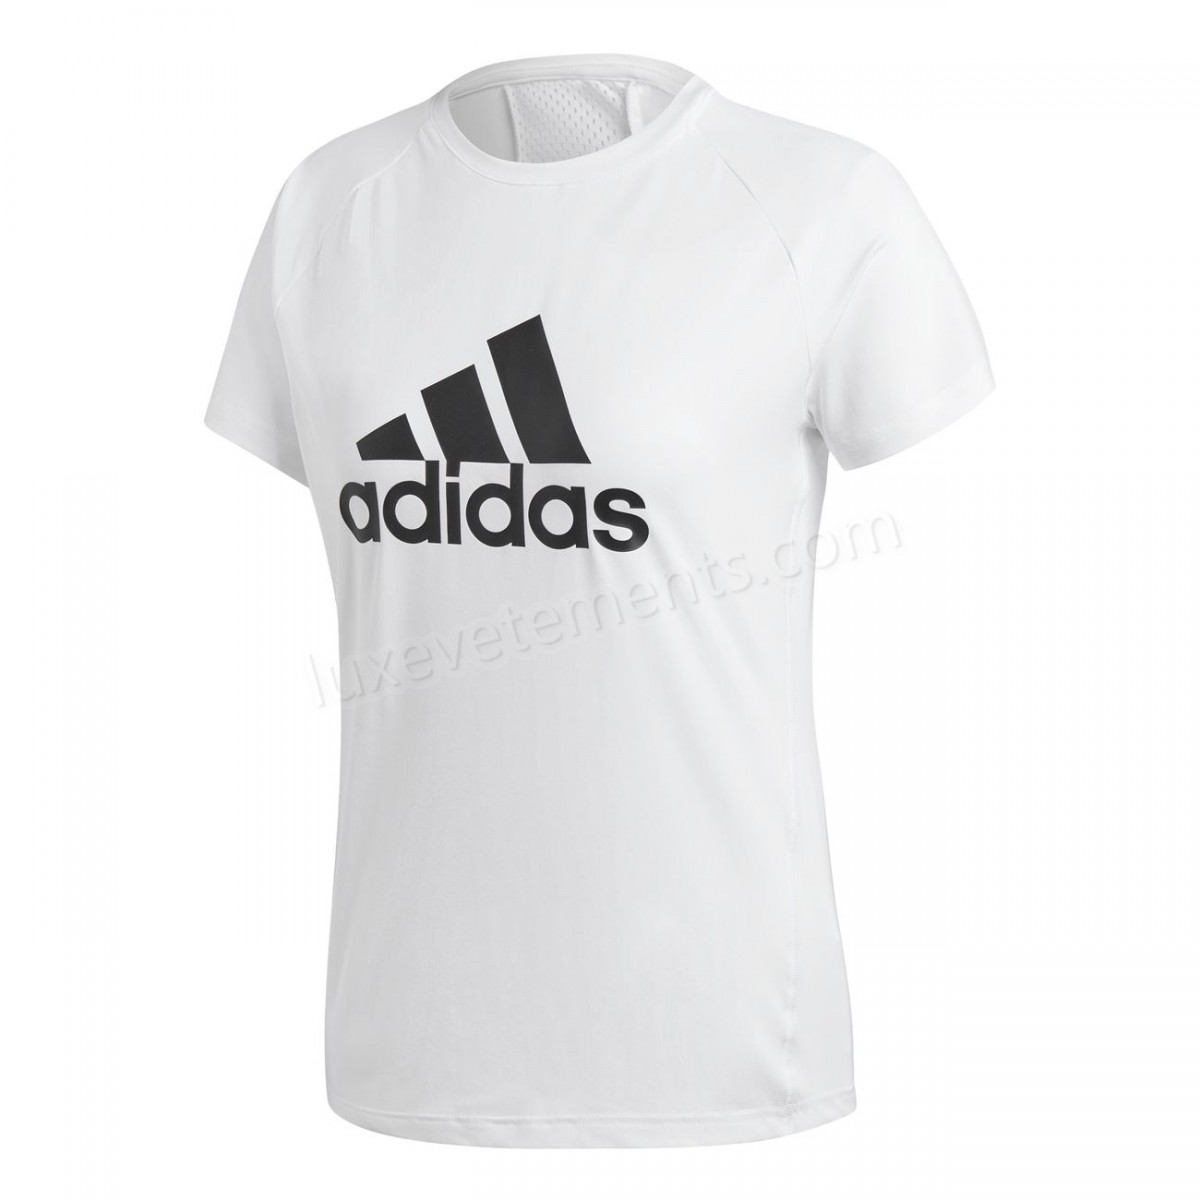 Adidas-Fitness femme ADIDAS Adidas Design 2 Move Logo Vente en ligne - -5